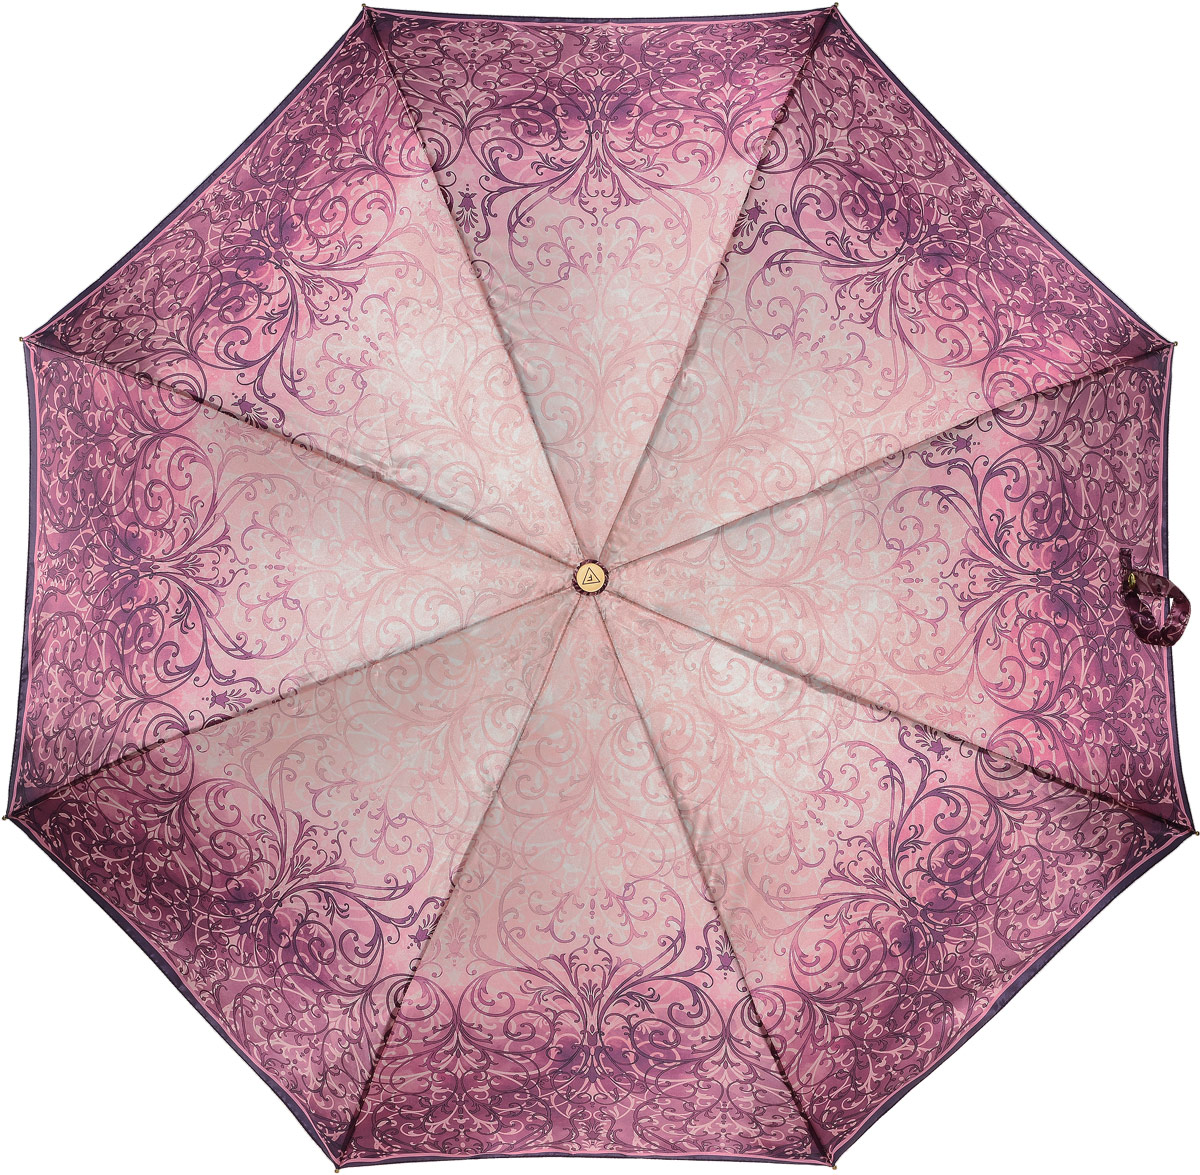 Зонт женский Fabretti, автомат, 3 сложения, цвет: фуксия, бежевый. L-17103-4